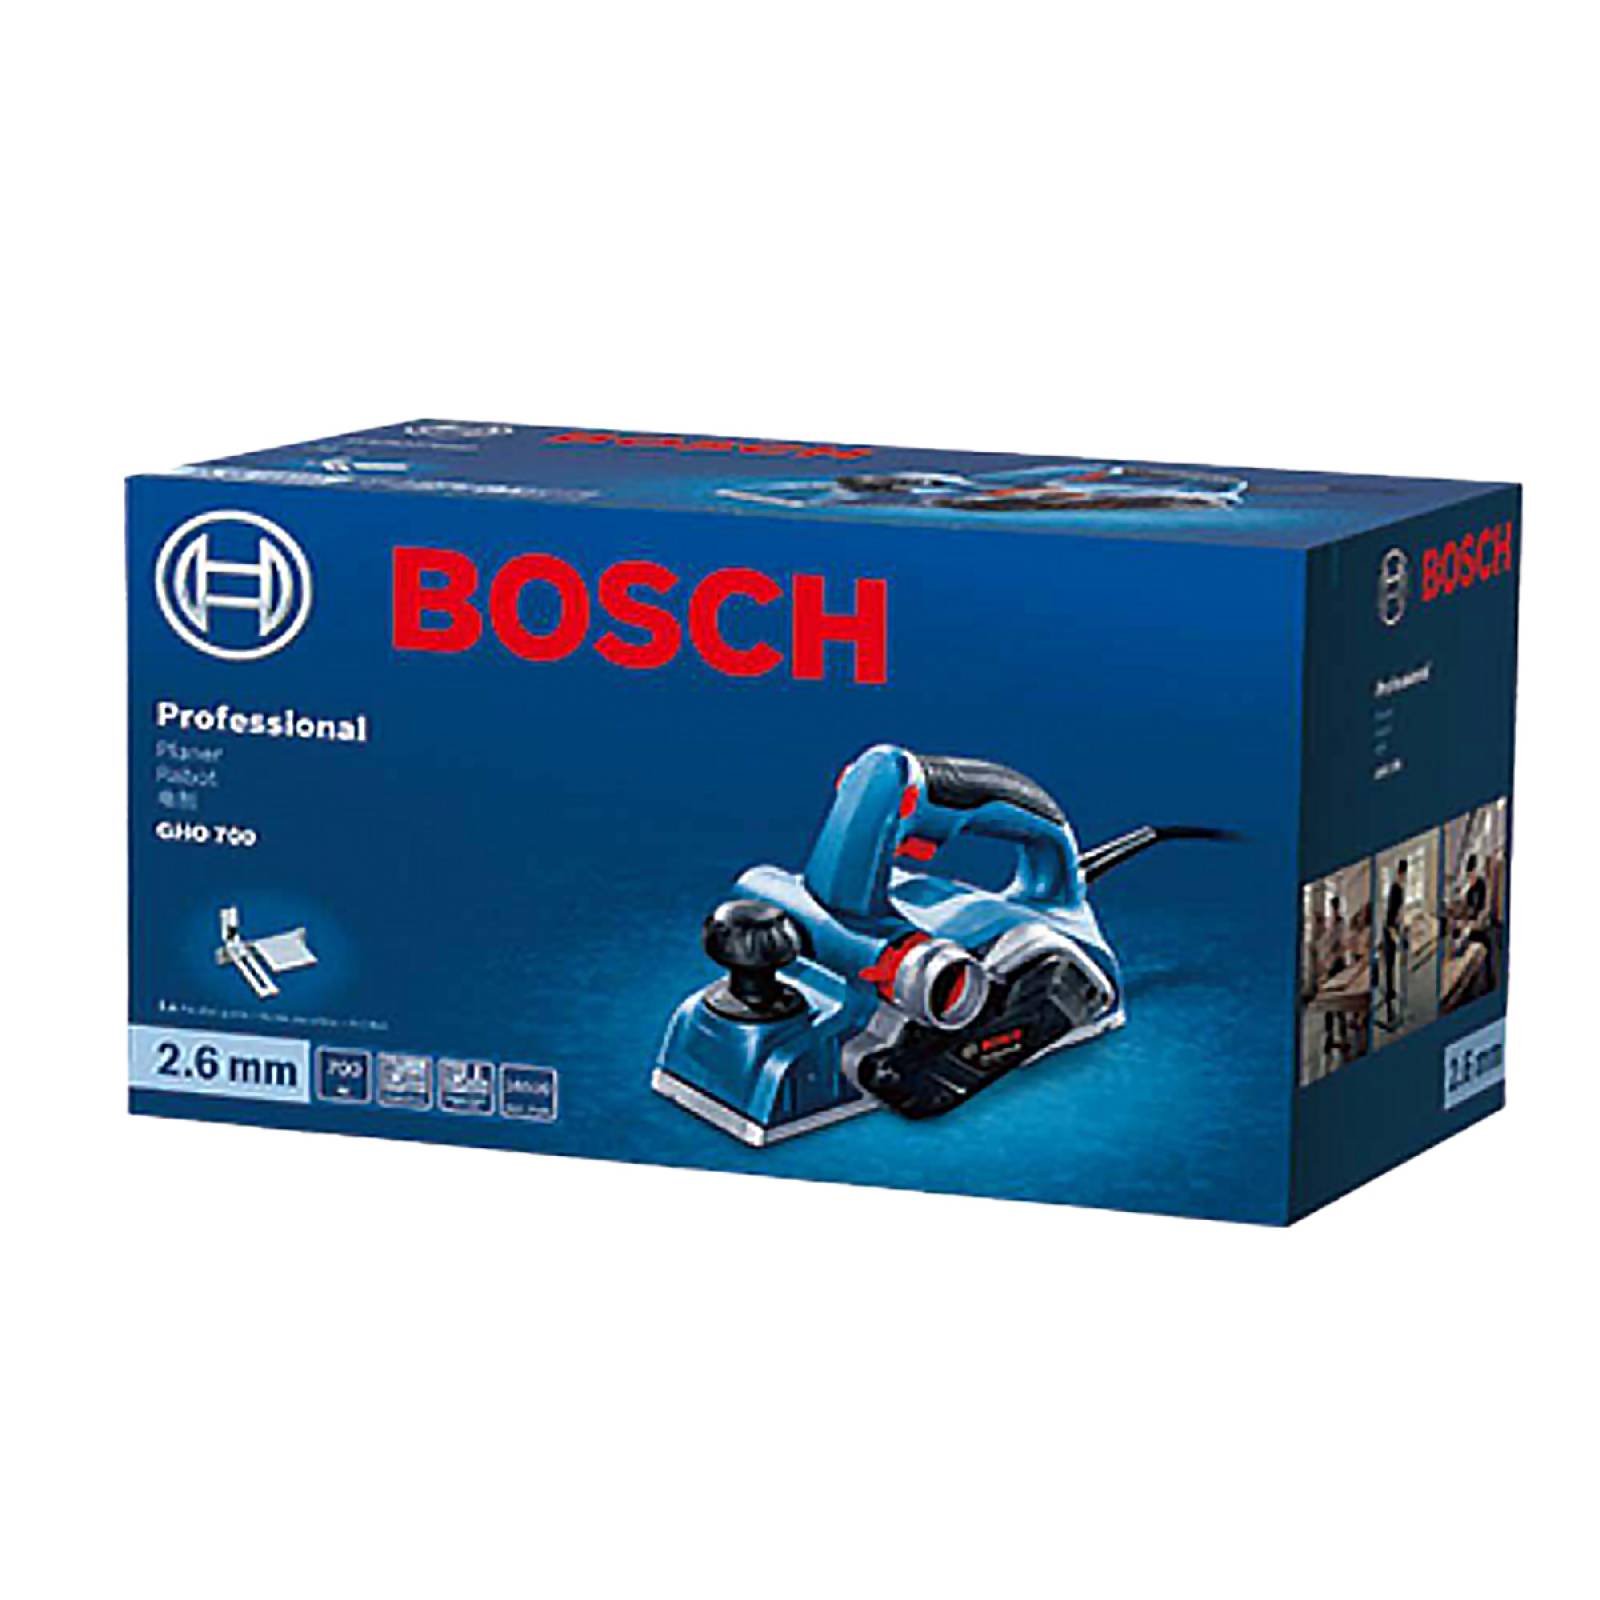 Cepillo eléctrico de mano Bosch Professional GHO 700 82mm 220V azul